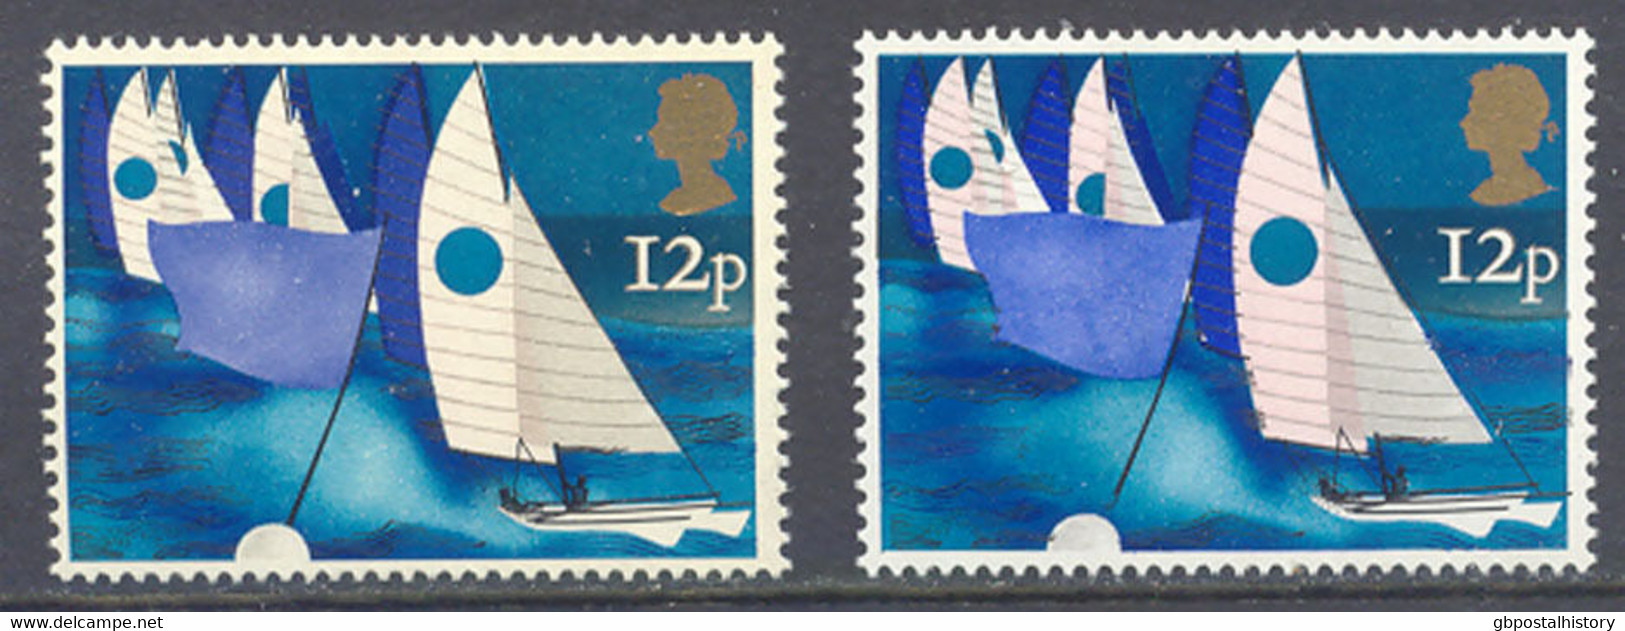 GB 1975 Sailing 12 P U/M ERROR/VARIETY: ROSE COLOUR + PHOSPHOR MISSING - Variétés, Erreurs & Curiosités